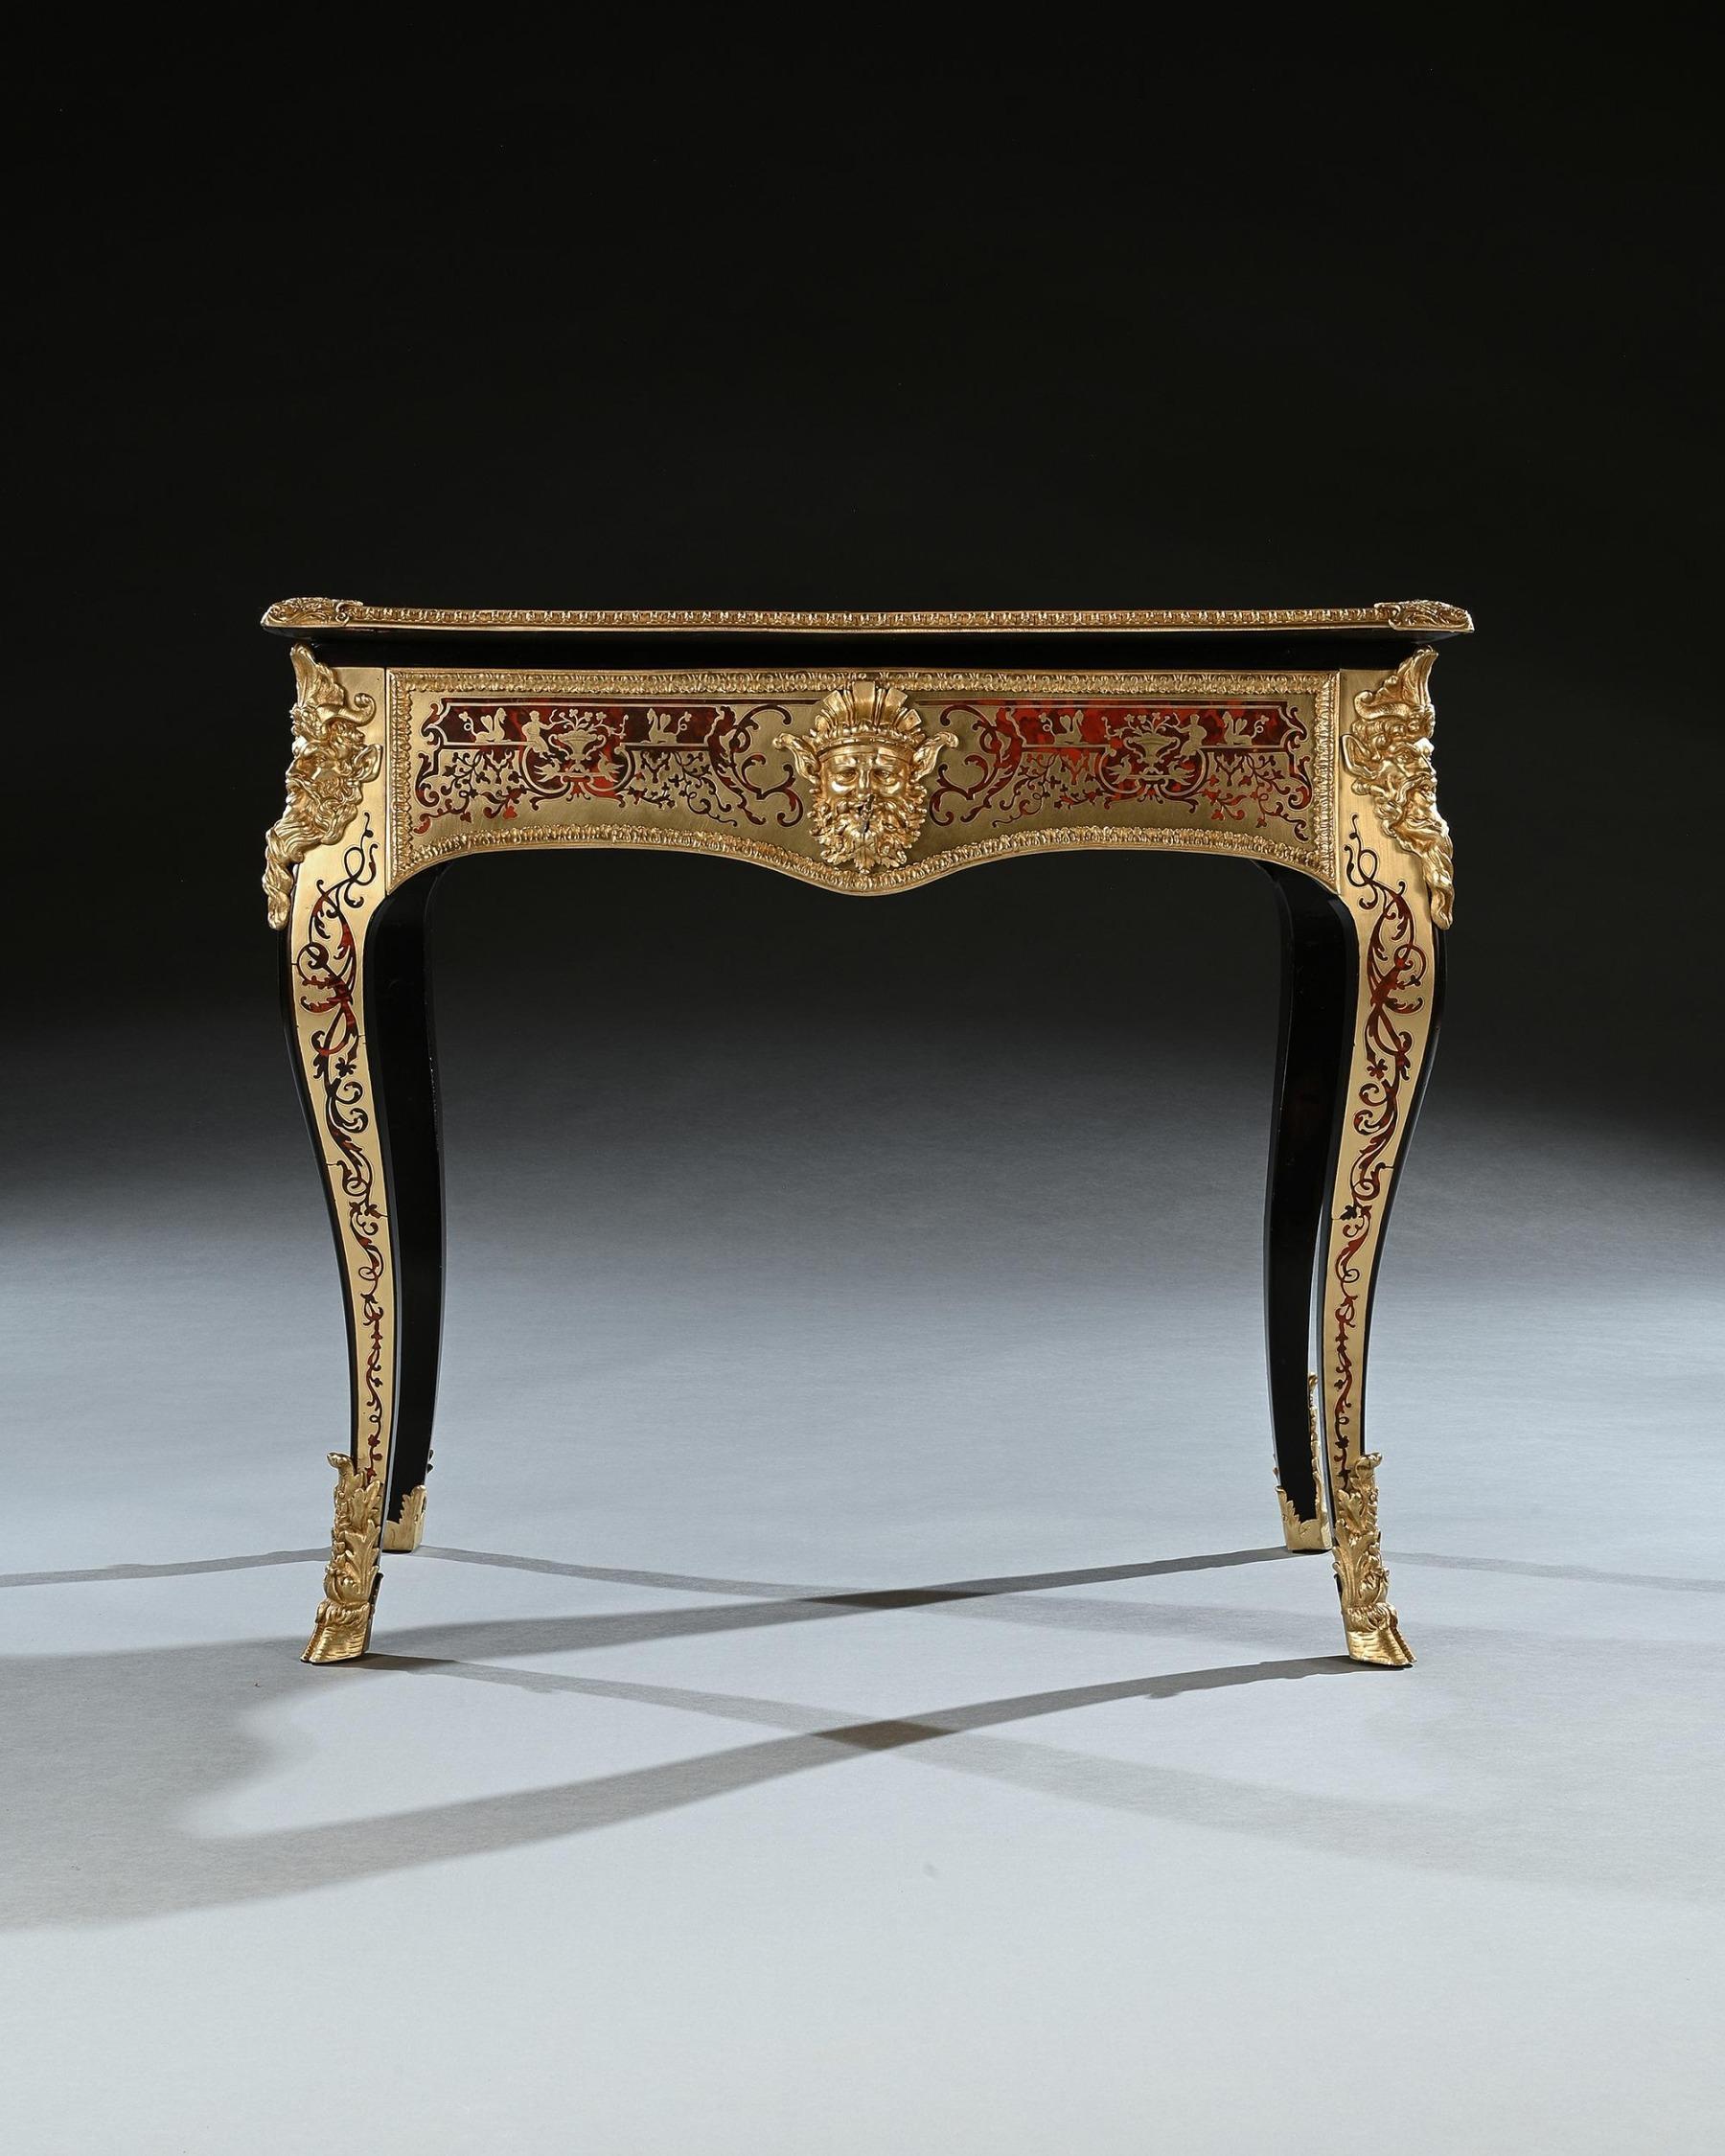 Exceptionnelle table à jeux montée en boulle et en bronze doré, de style Louis XVI, attribuée à Thomas Parker (1805-1830).

Anglais Circa 1825
 
Conçue dans le goût le plus luxueux qui soit, cette belle pièce est un exemple des goûts francophiles